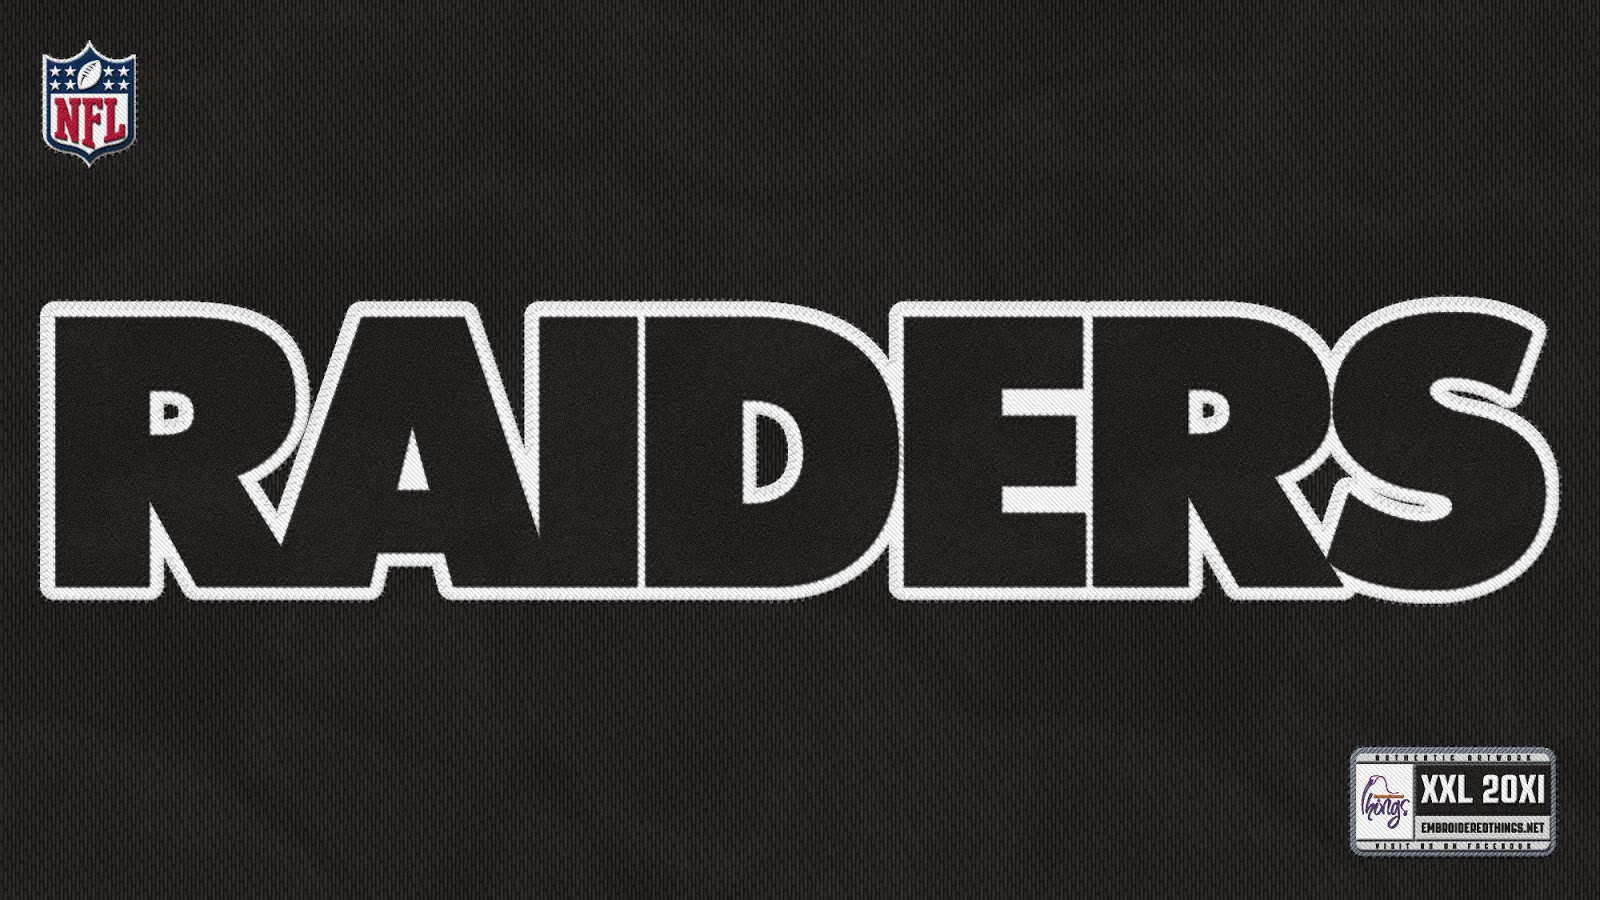 49+] Raiders iPhone Wallpaper on WallpaperSafari  Dodgers, Oakland raiders  logo, Raiders wallpaper